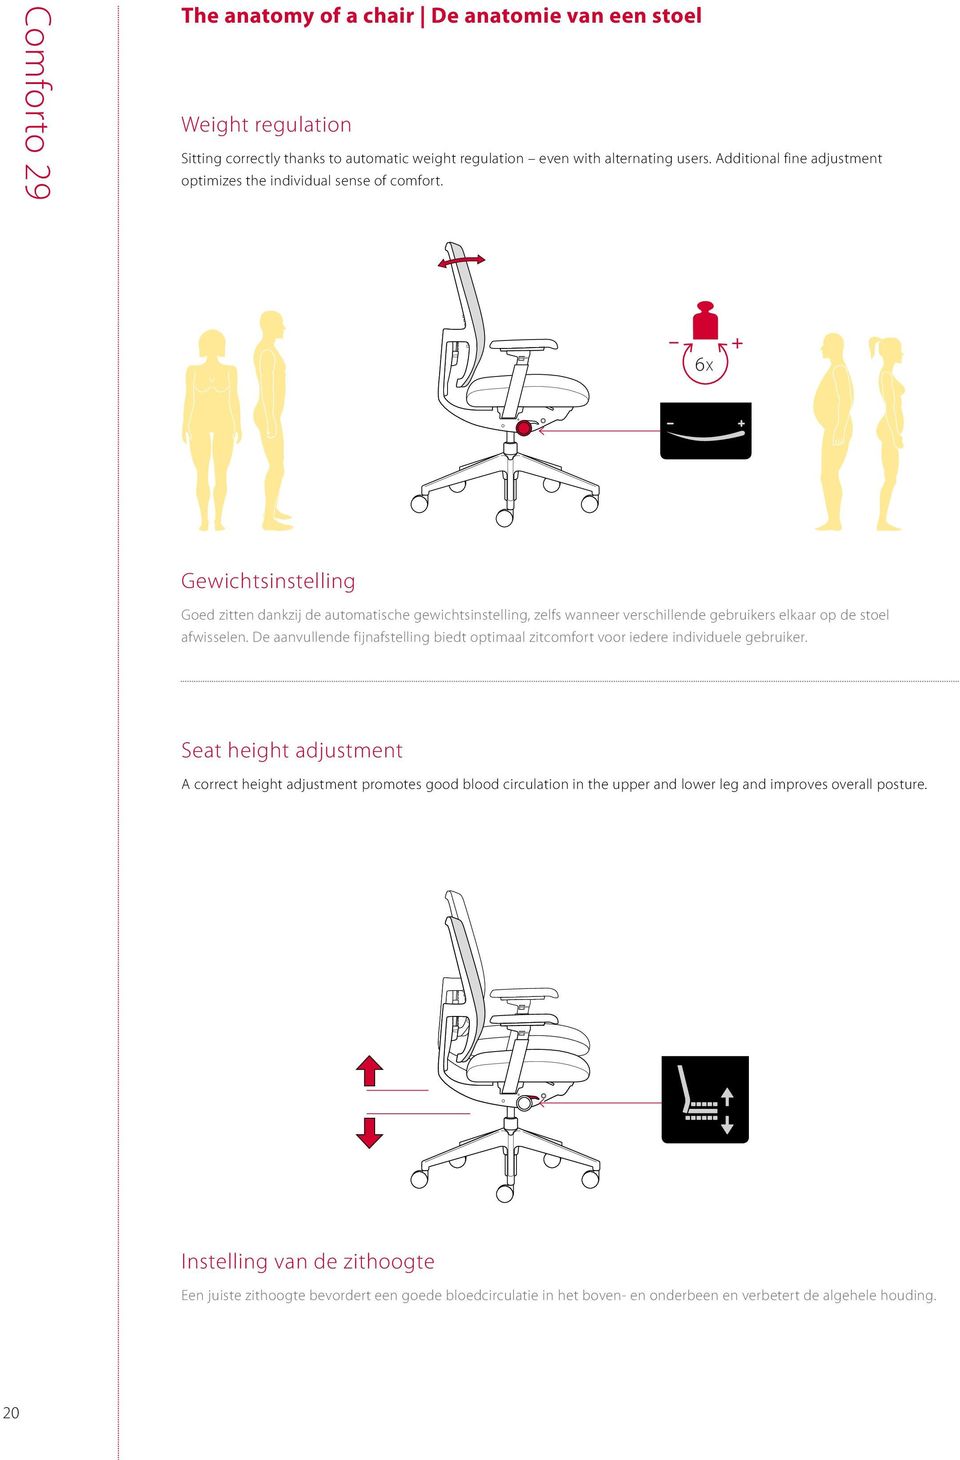 6x Gewichtsinstelling Goed zitten dankzij de automatische gewichtsinstelling, zelfs wanneer verschillende gebruikers elkaar op de stoel afwisselen.